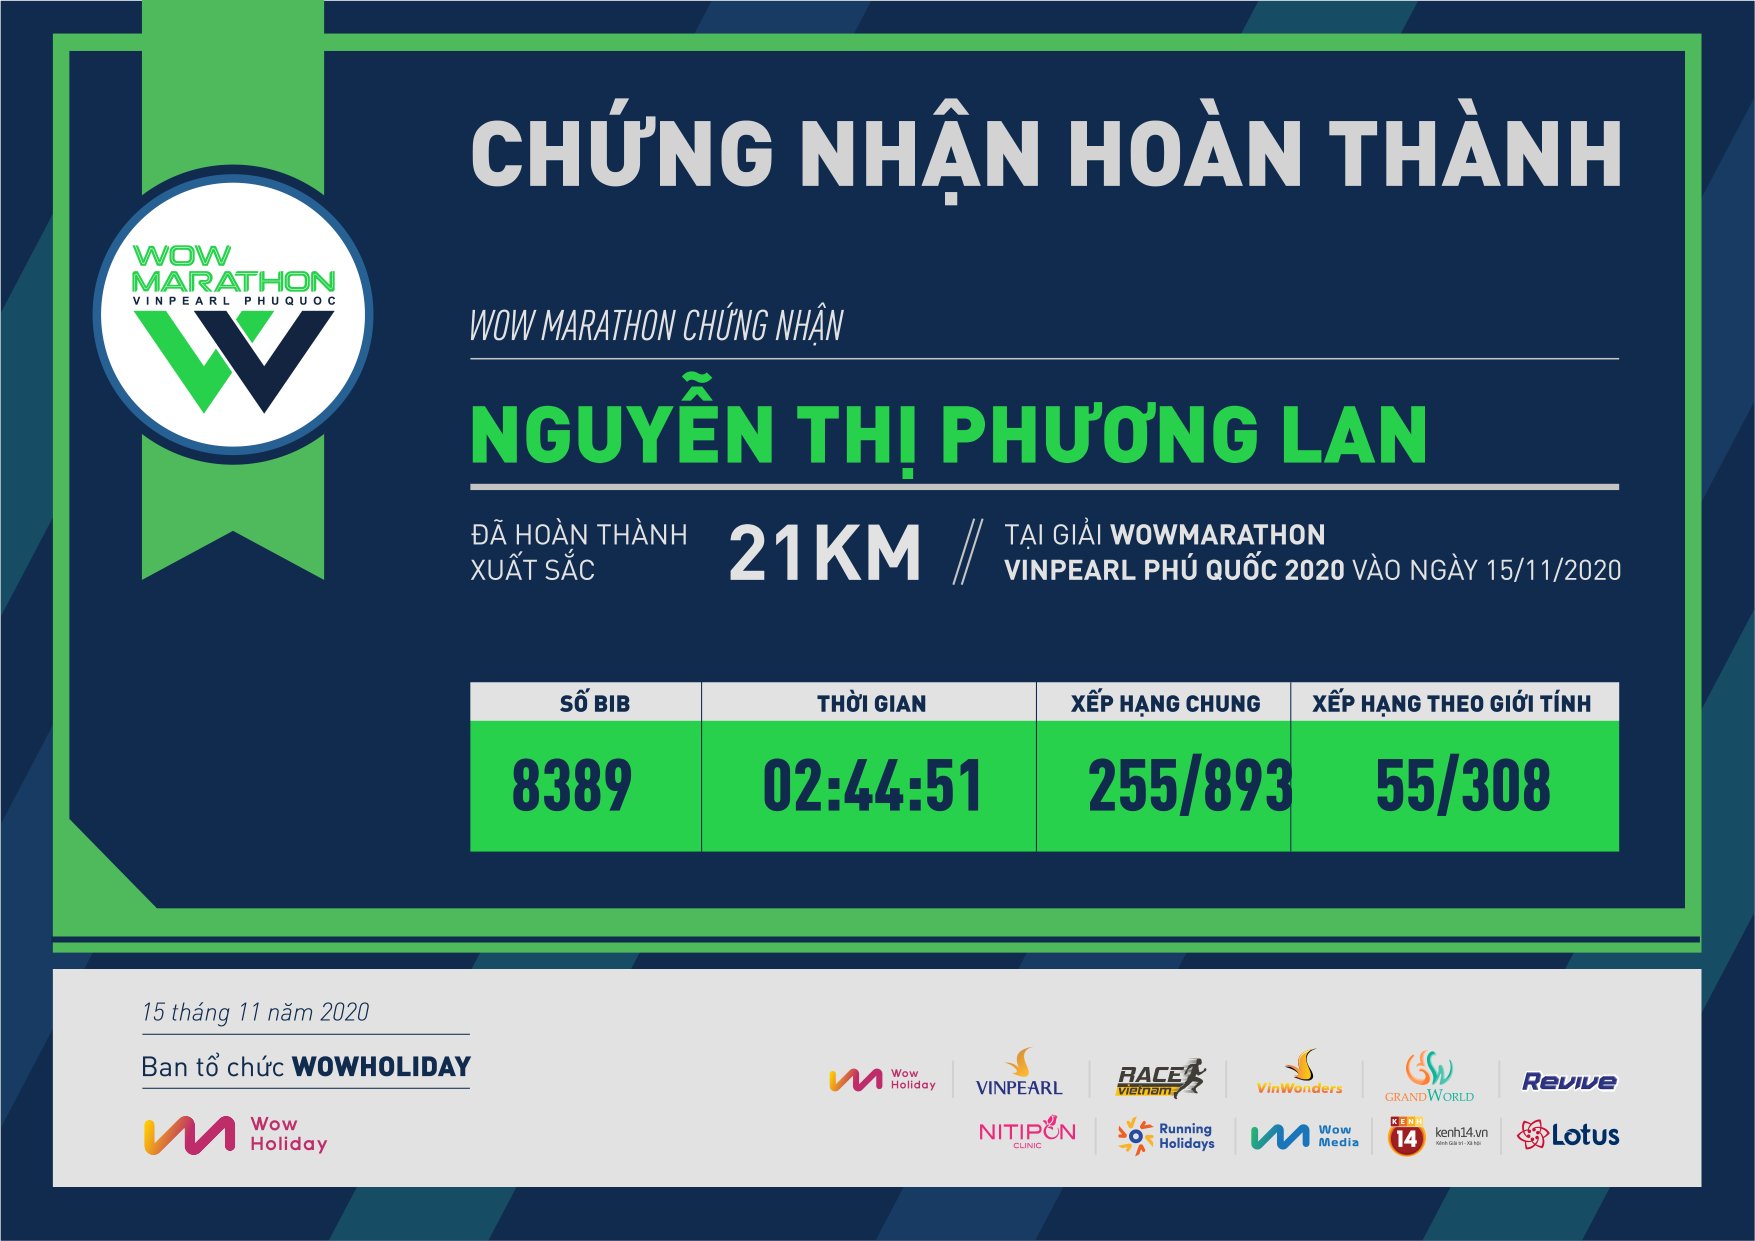 8389 - Nguyễn Thị Phương Lan